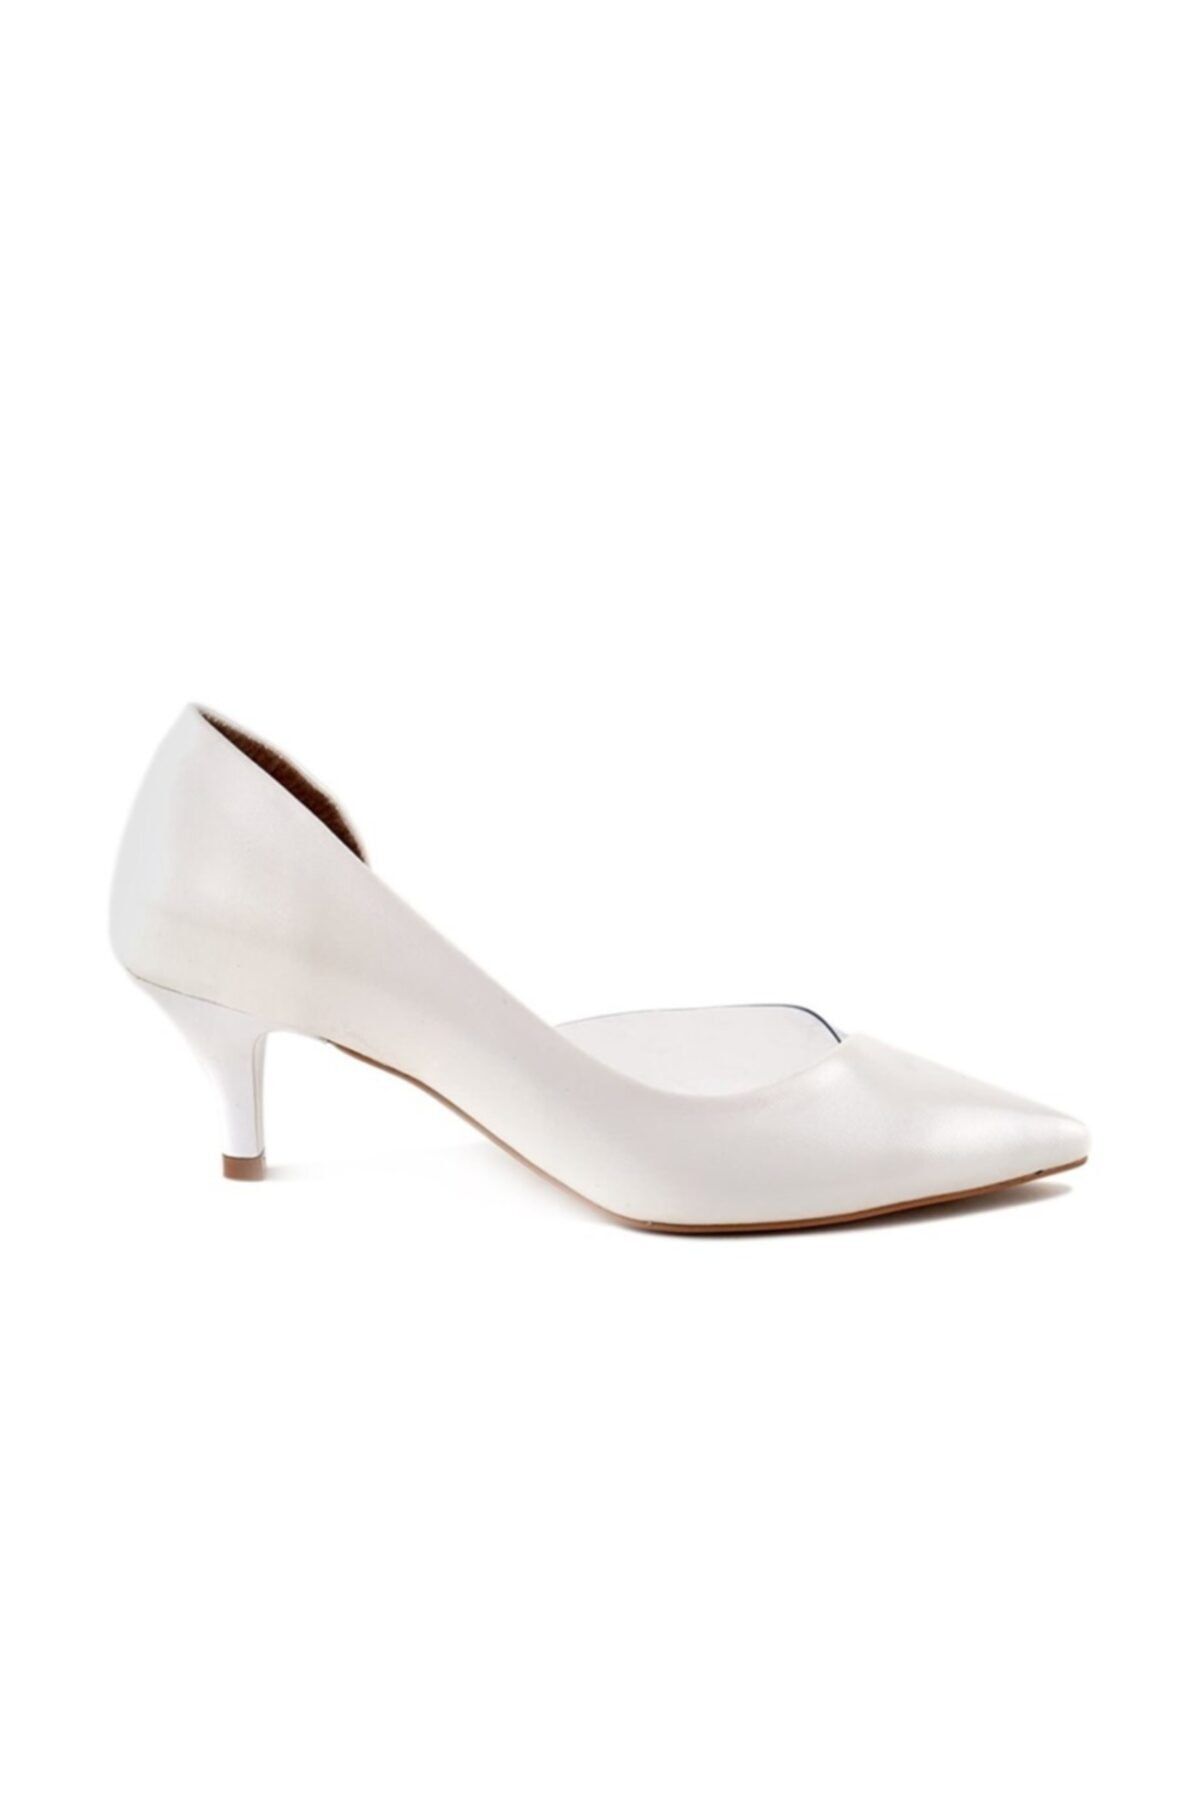 luvishoes 453 Beyaz Lara Kadın Topuklu Ayakkabı